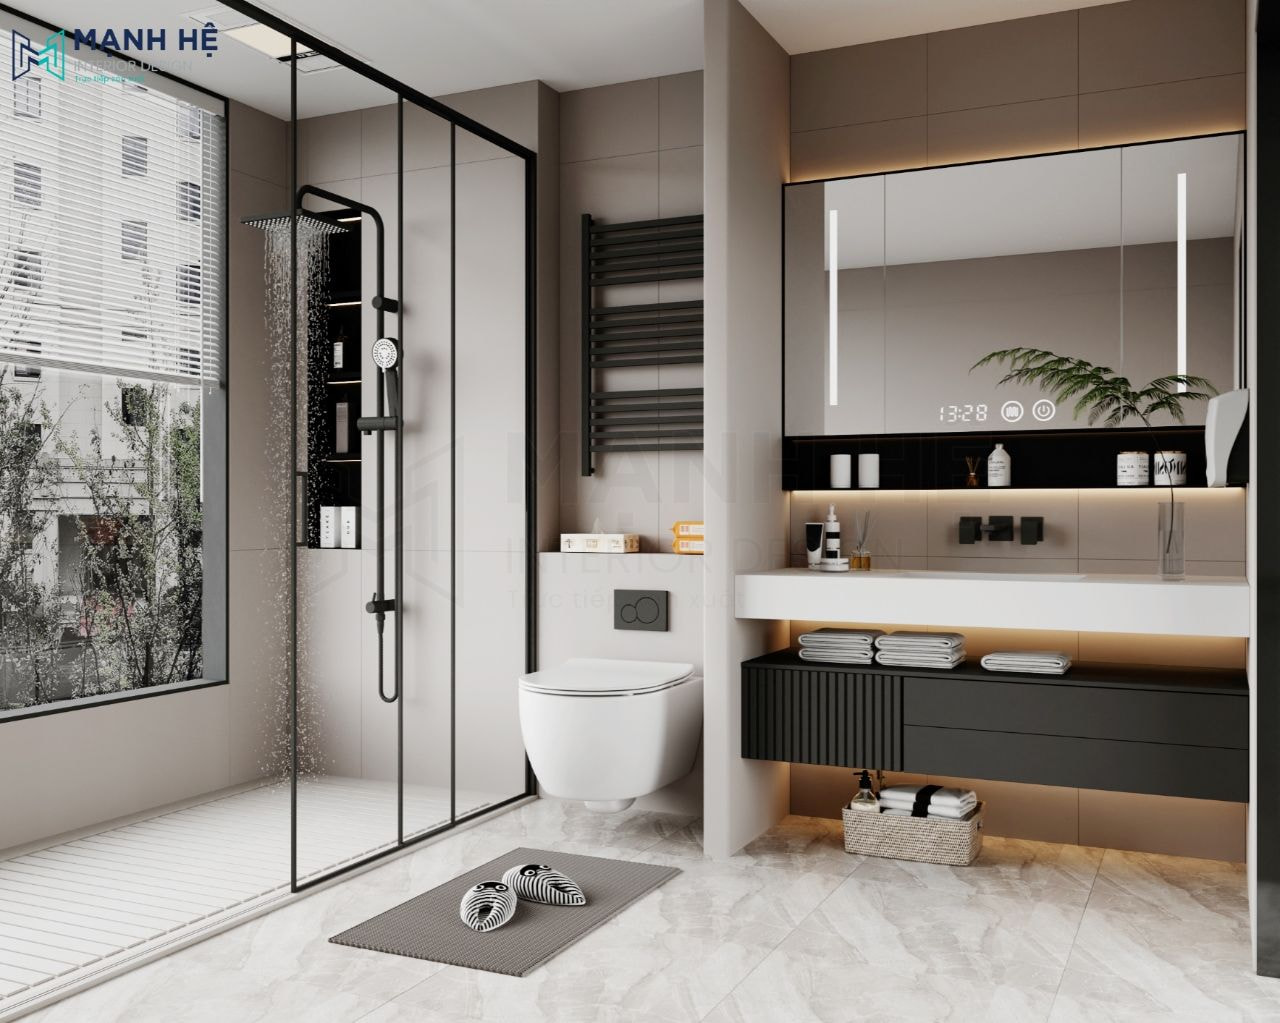 Phòng tắm được ngăn cách khu vực vệ sinh bằng vách kính